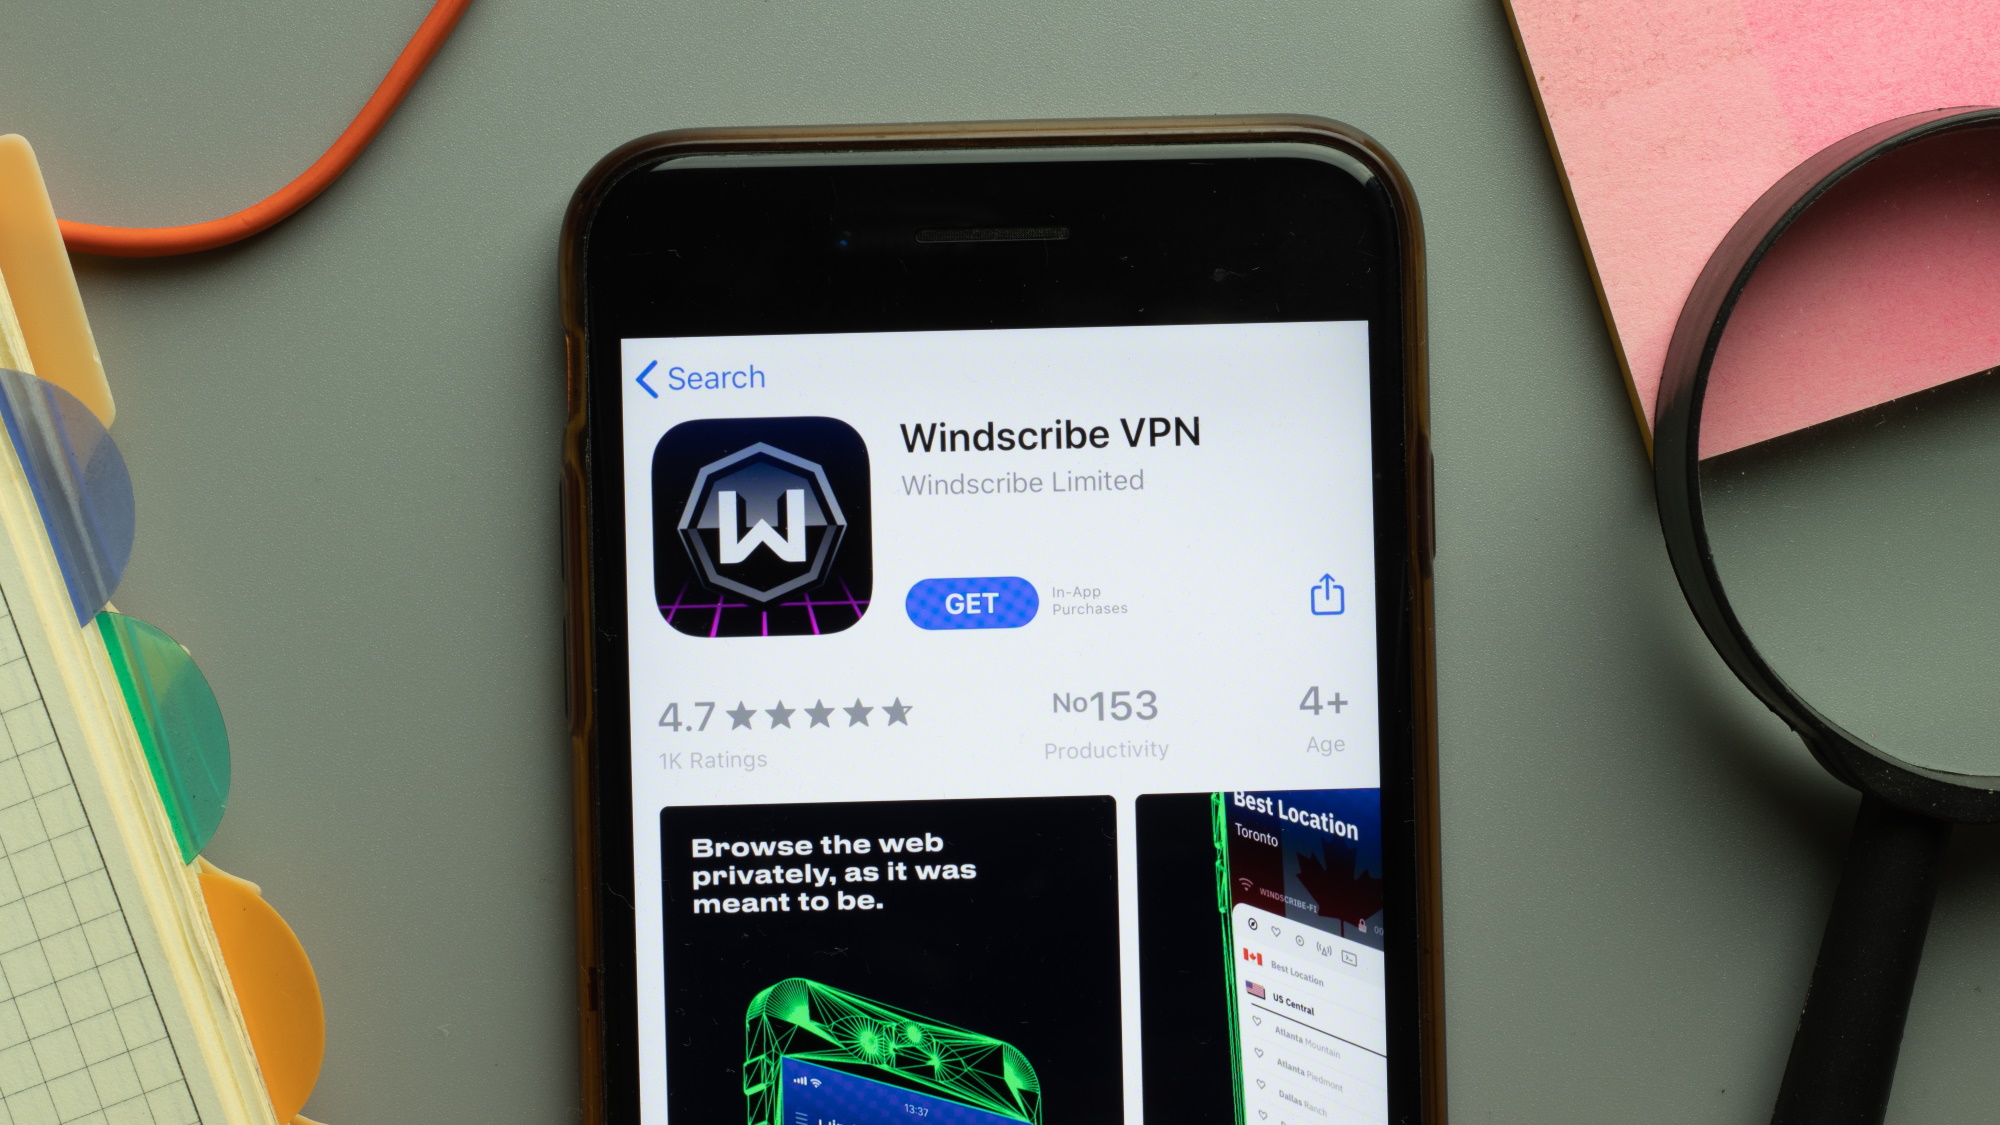 Windscribe mobile VPN app